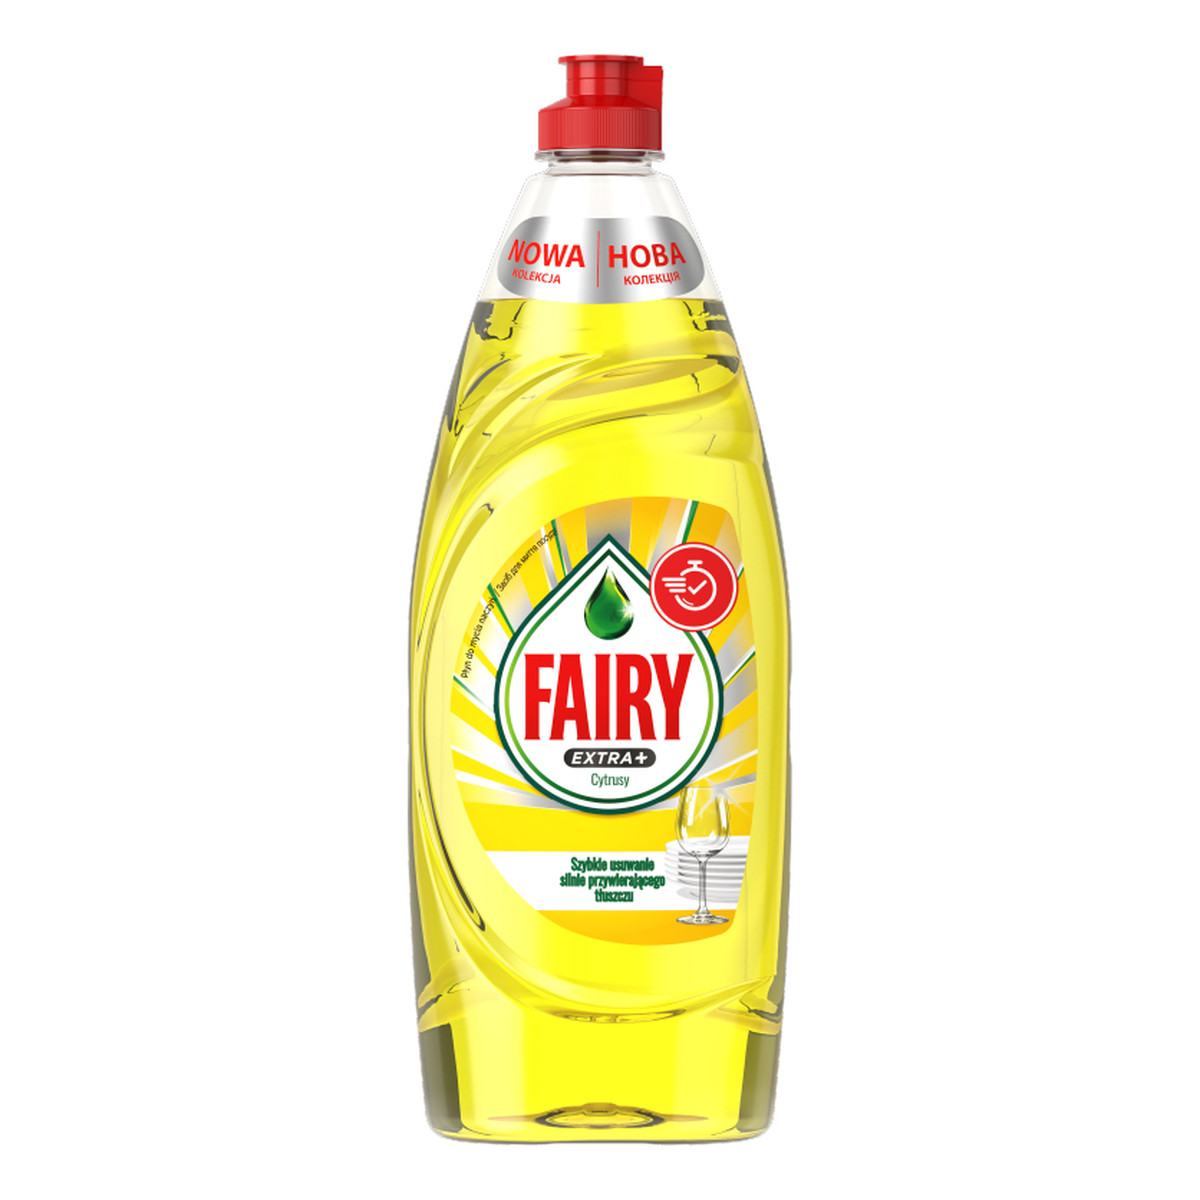 Fairy Extra + Płyn do mycia naczyń Cytrusy 650ml